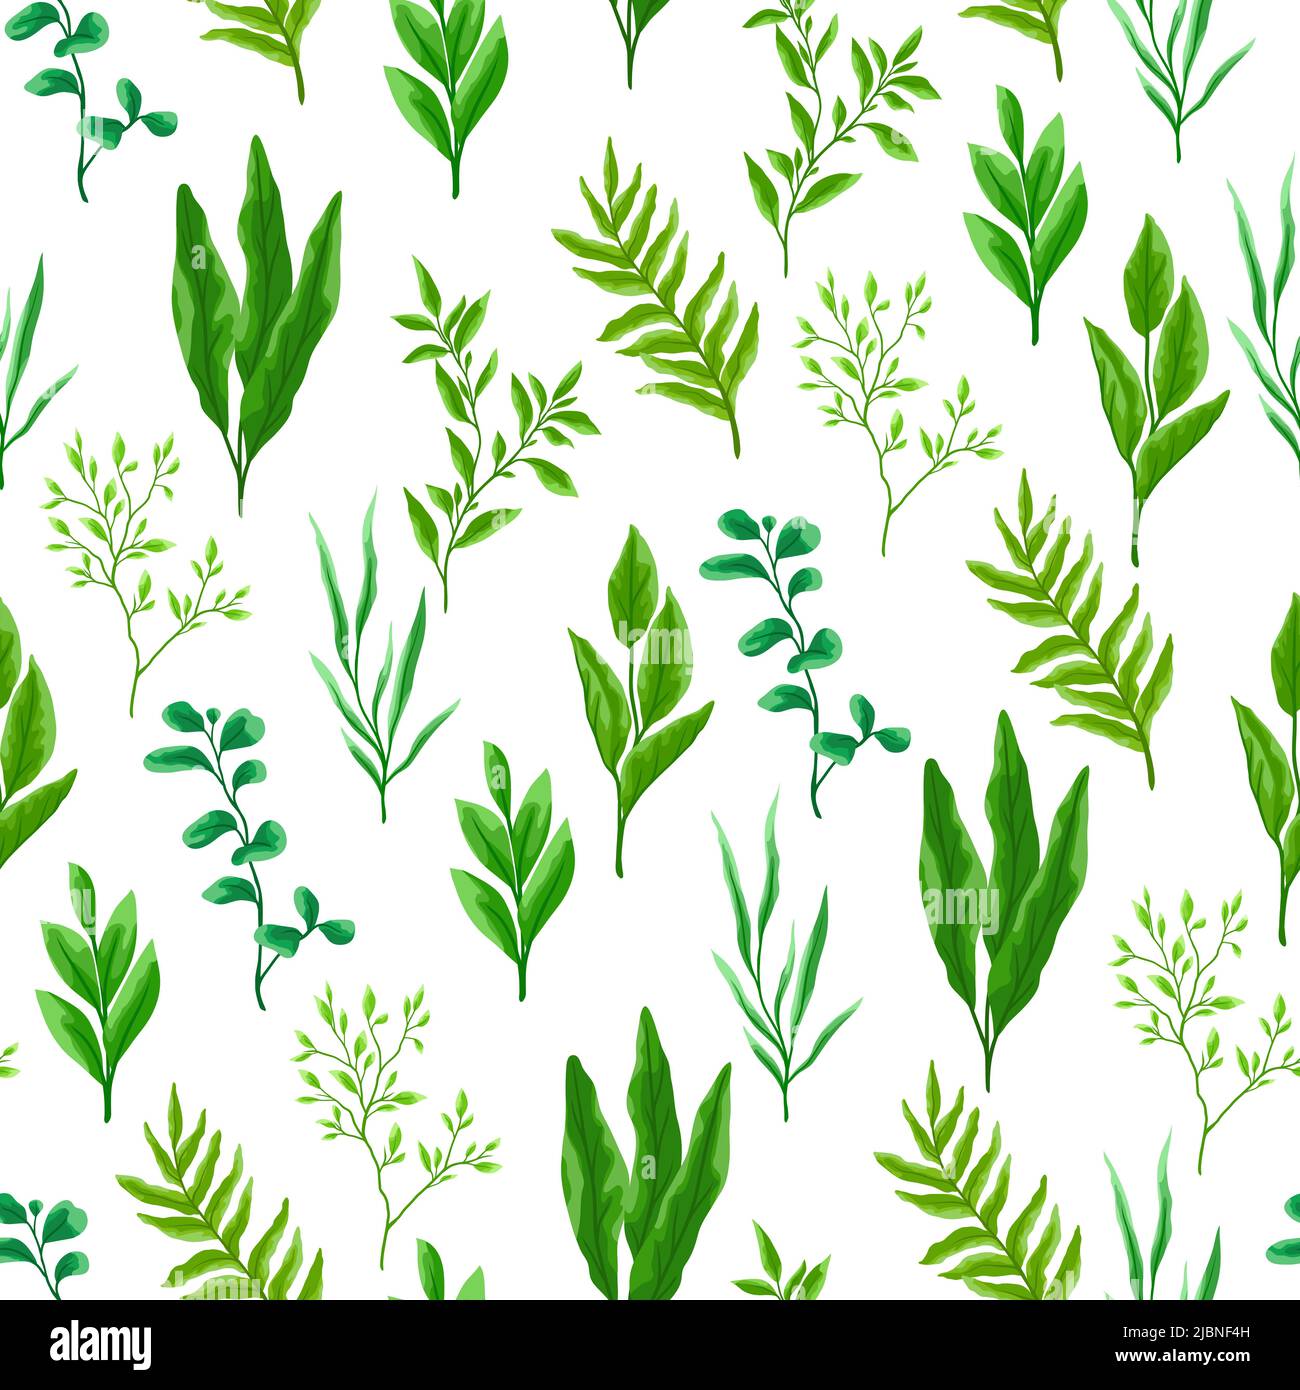 Nahtloses Muster mit Ästen und grünen Blättern. Stilisiertes Laub im Frühling oder Sommer. Saisonale Abbildung. Stock Vektor